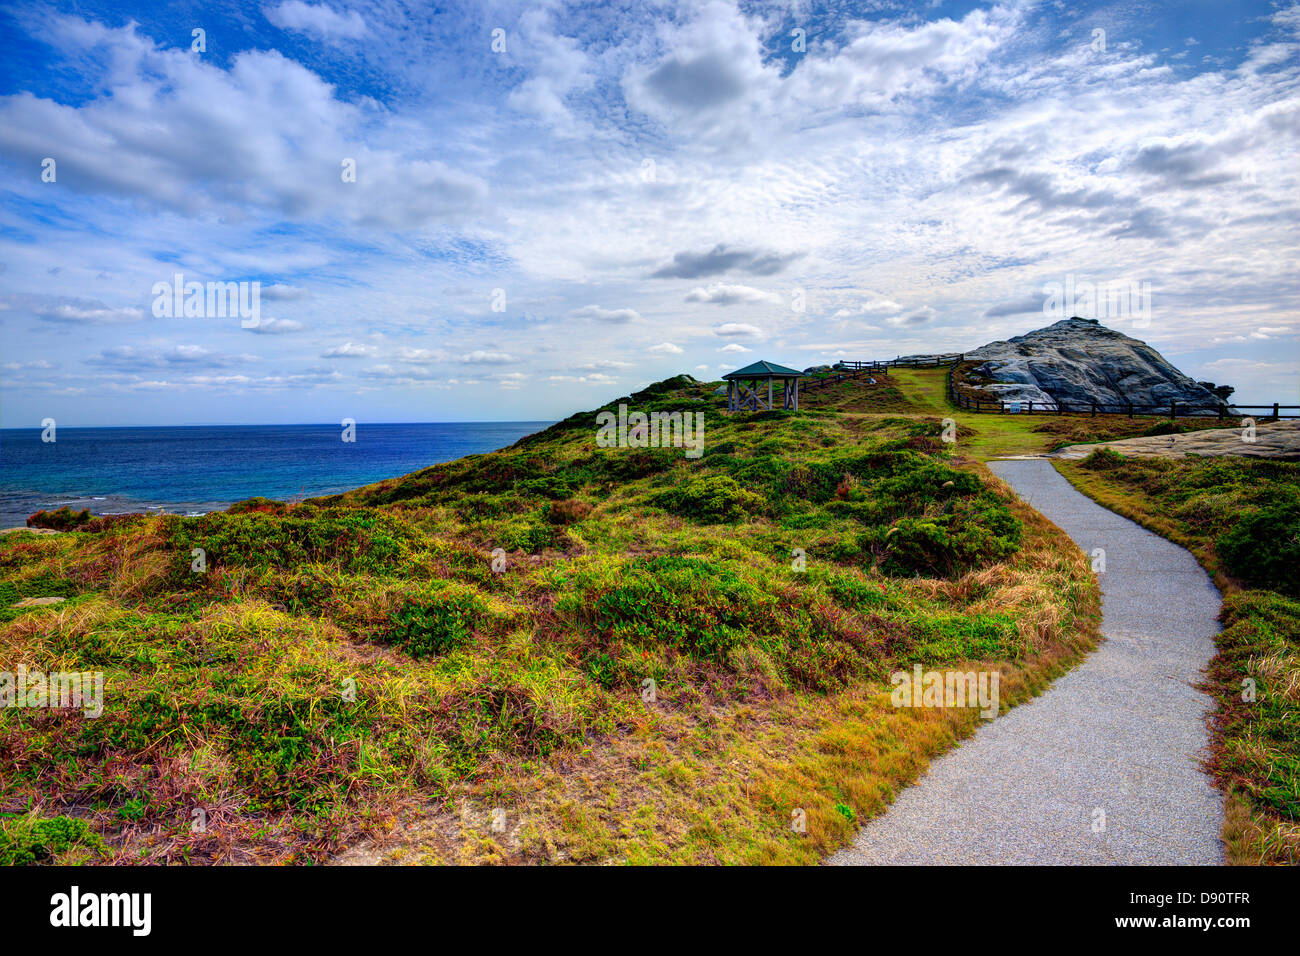 Paysage sur l'île de Tokashiki, Okinawa, Japon. Banque D'Images